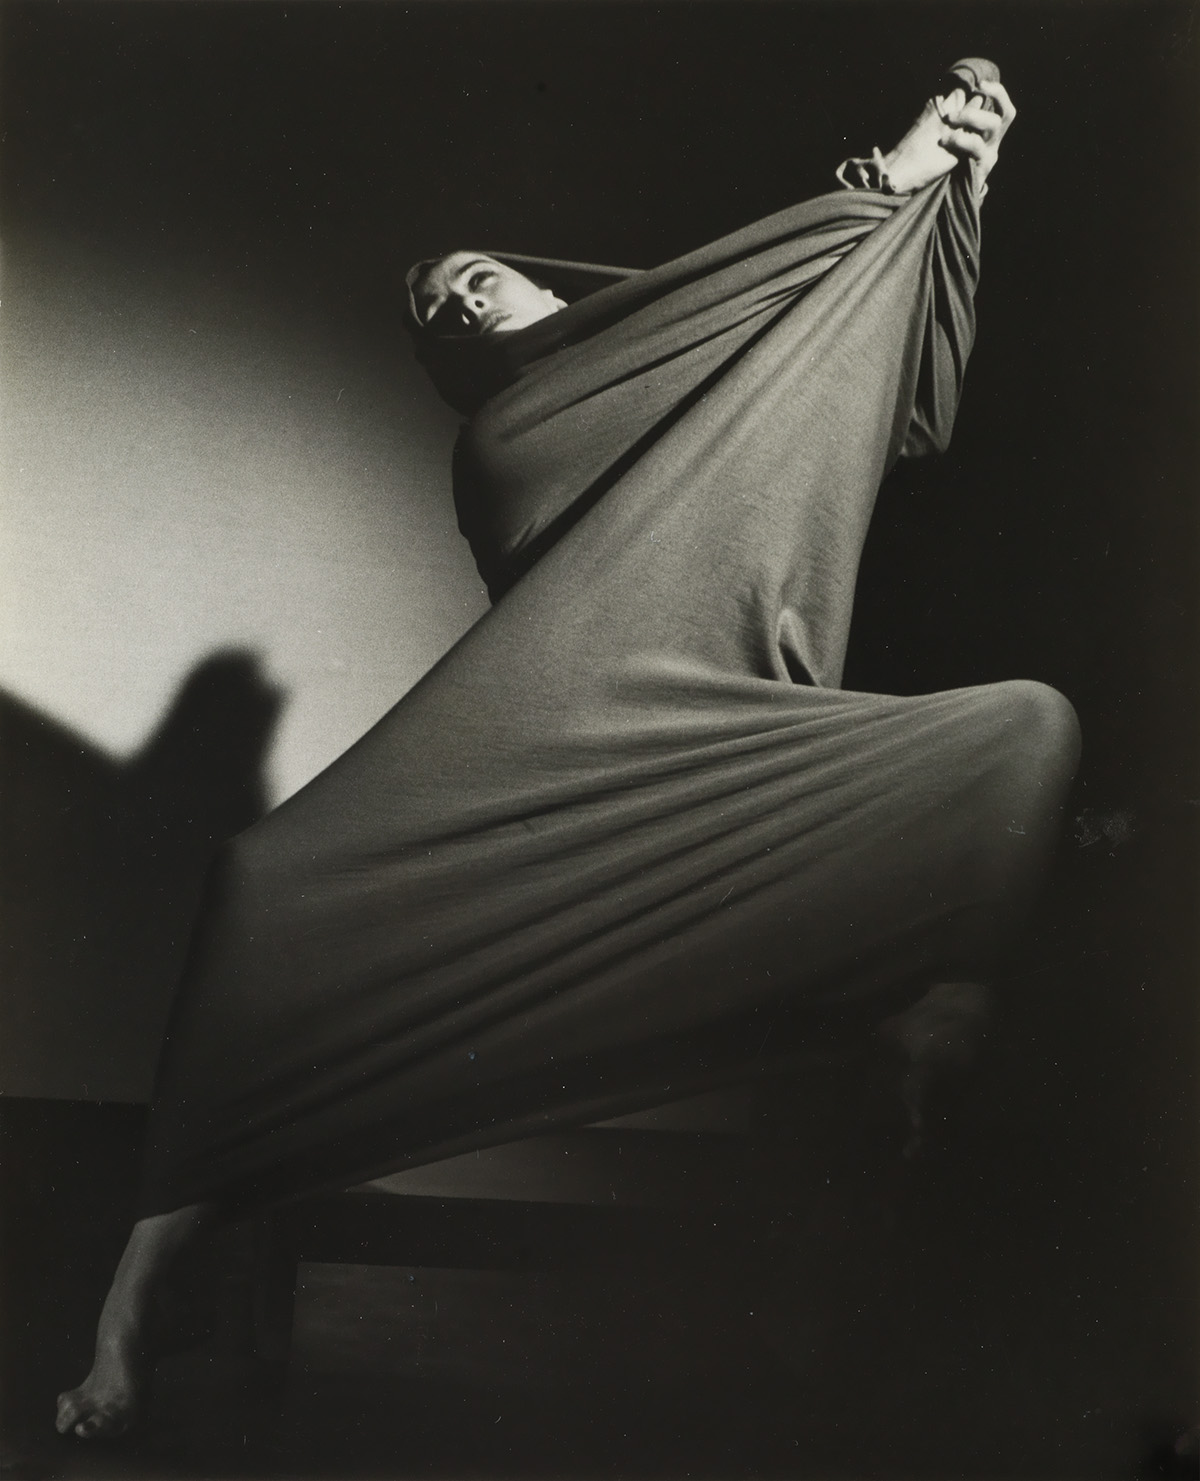 BARBARA MORGAN (1900-1992) Martha Graham performing Lamentation.